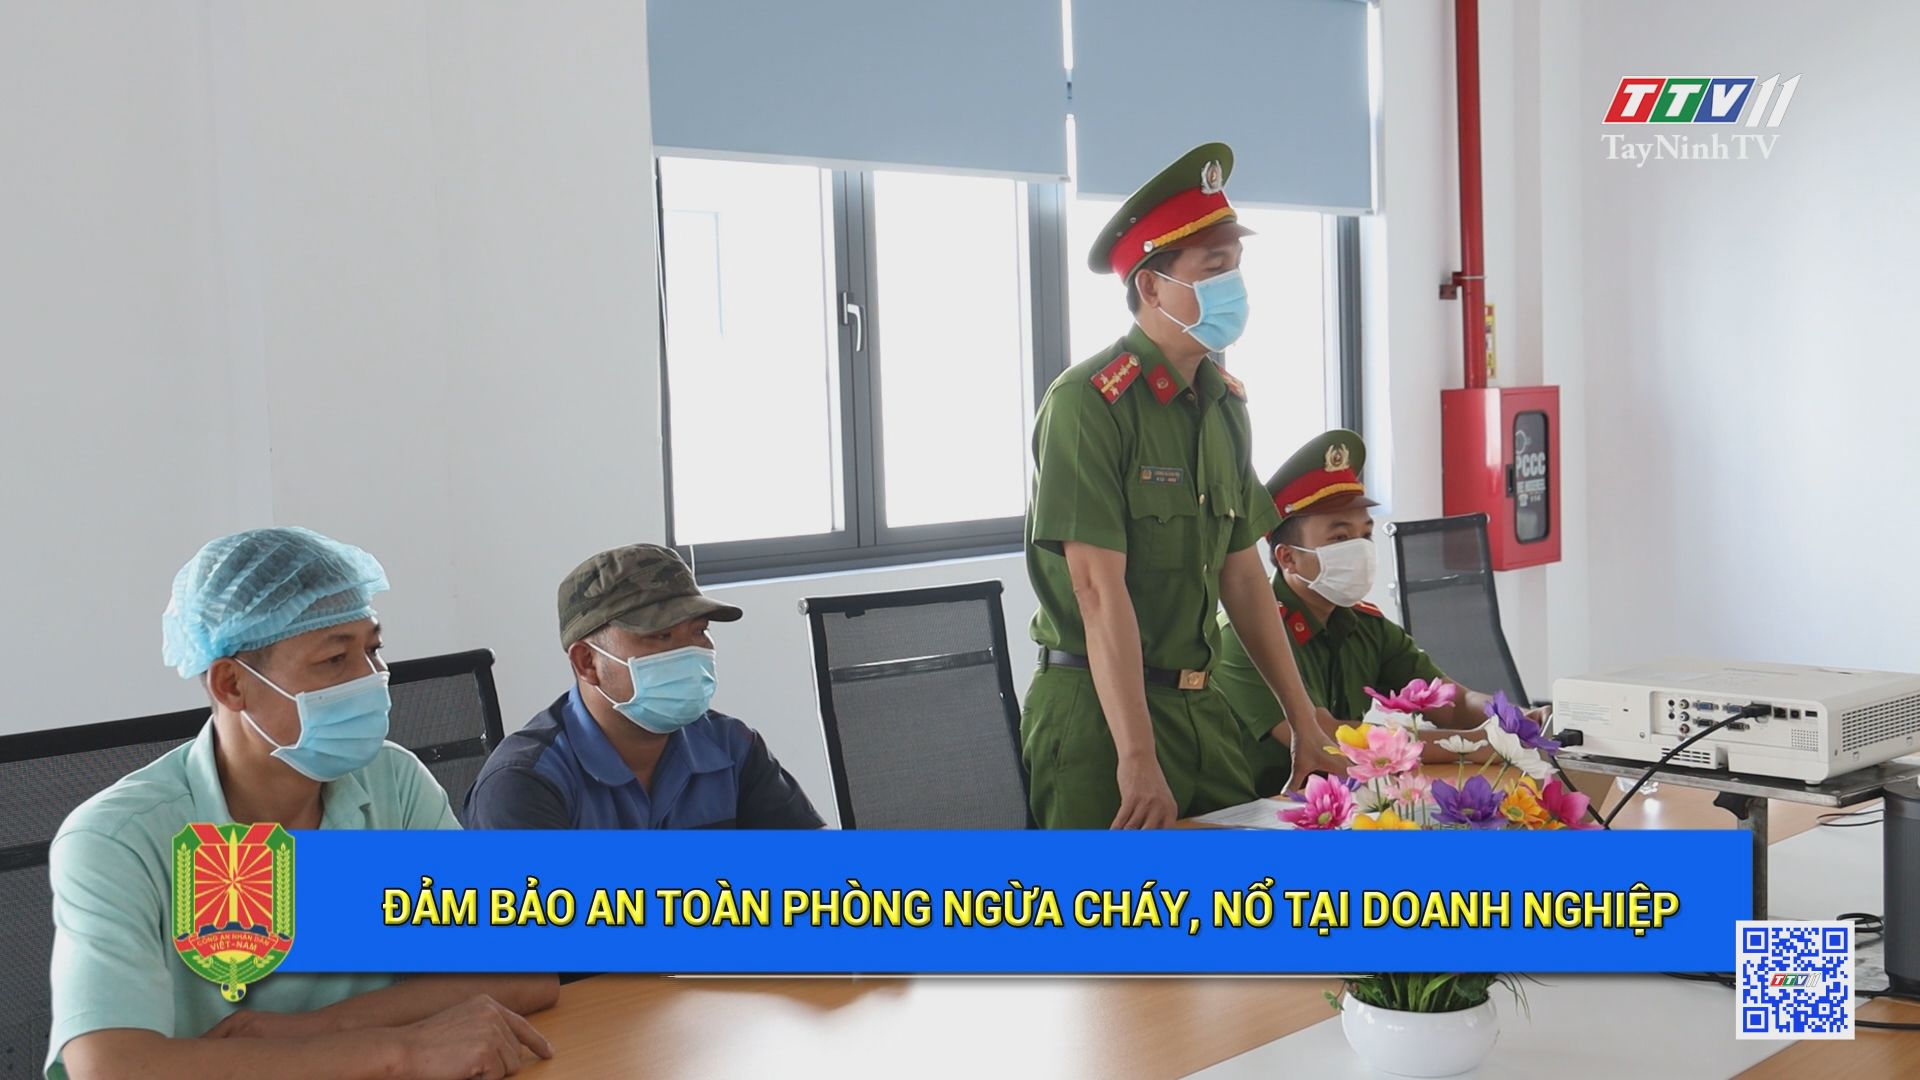 Đảm bảo an toàn phòng ngừa cháy, nổ tại doanh nghiệp | An ninh Tây Ninh | TayNinhTV